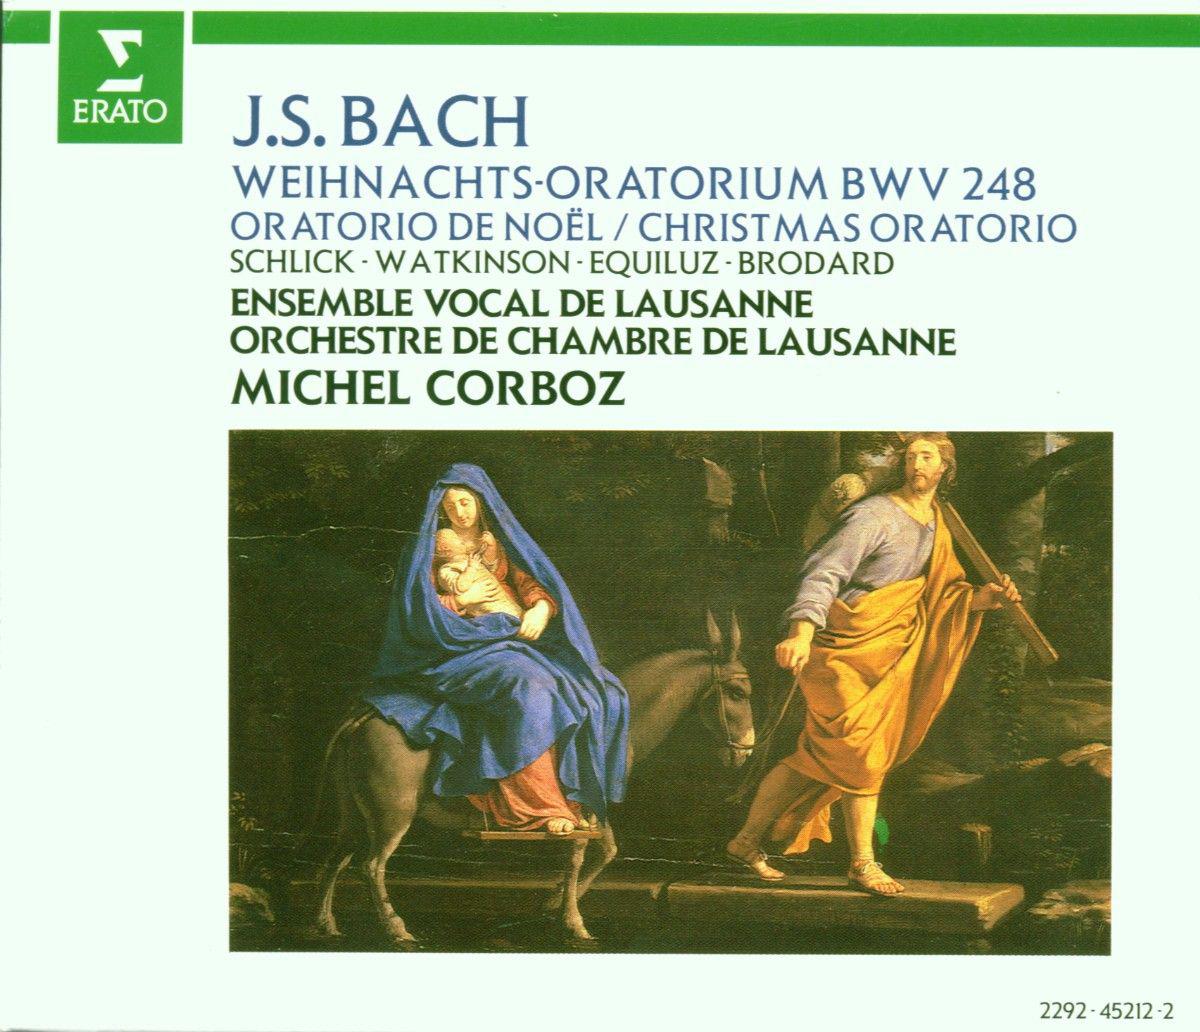 Weihnachtsoratorium, BWV 248, Pt. 4:No. 40, Rezitativ und Arioso-Choral. "Wohlan, dein Name soll allein"